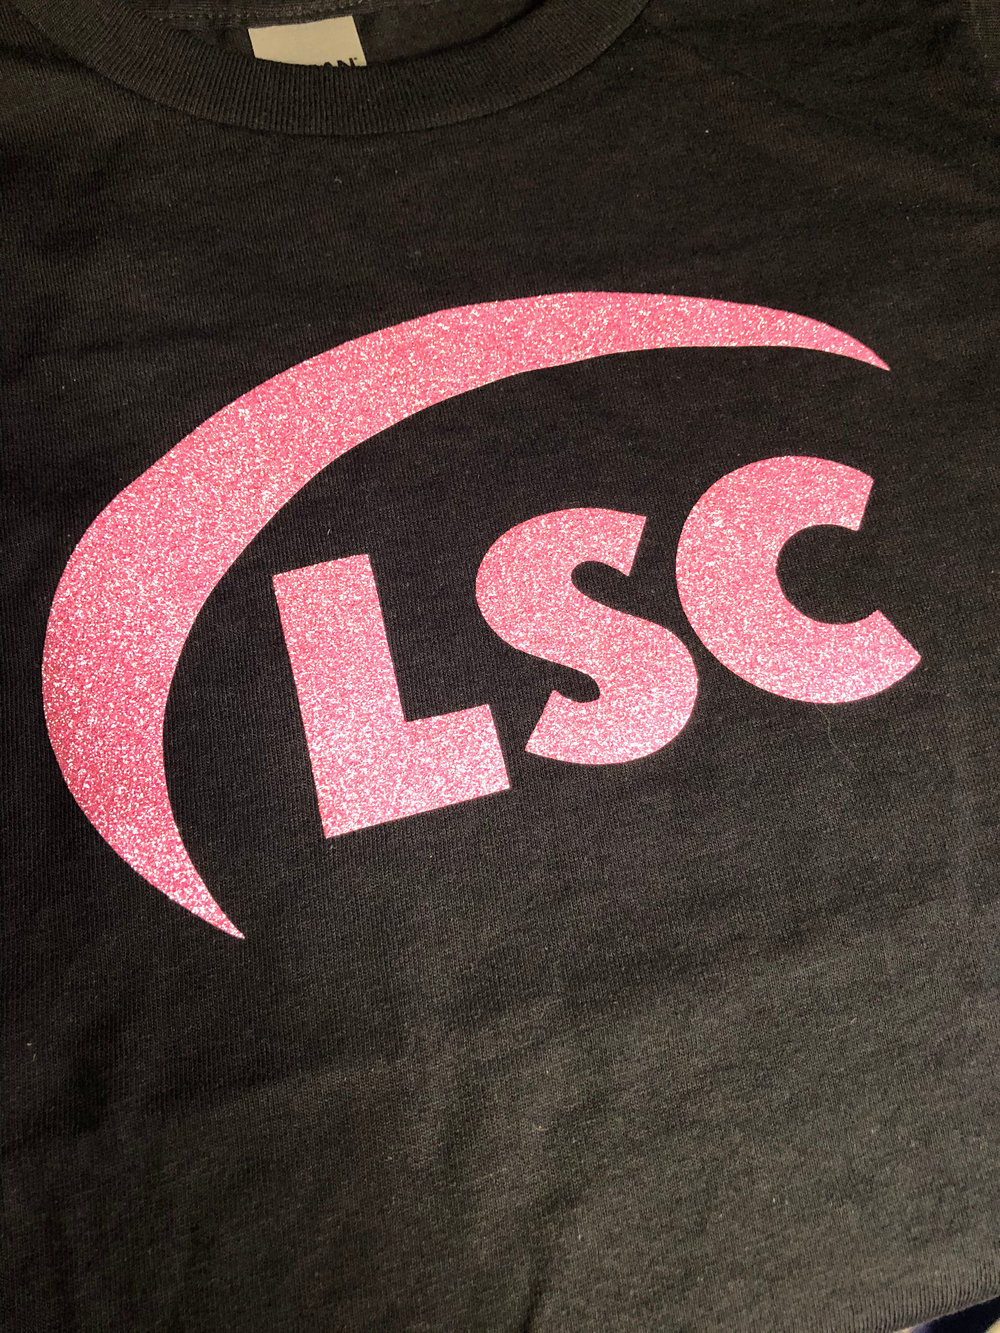 LSC Black